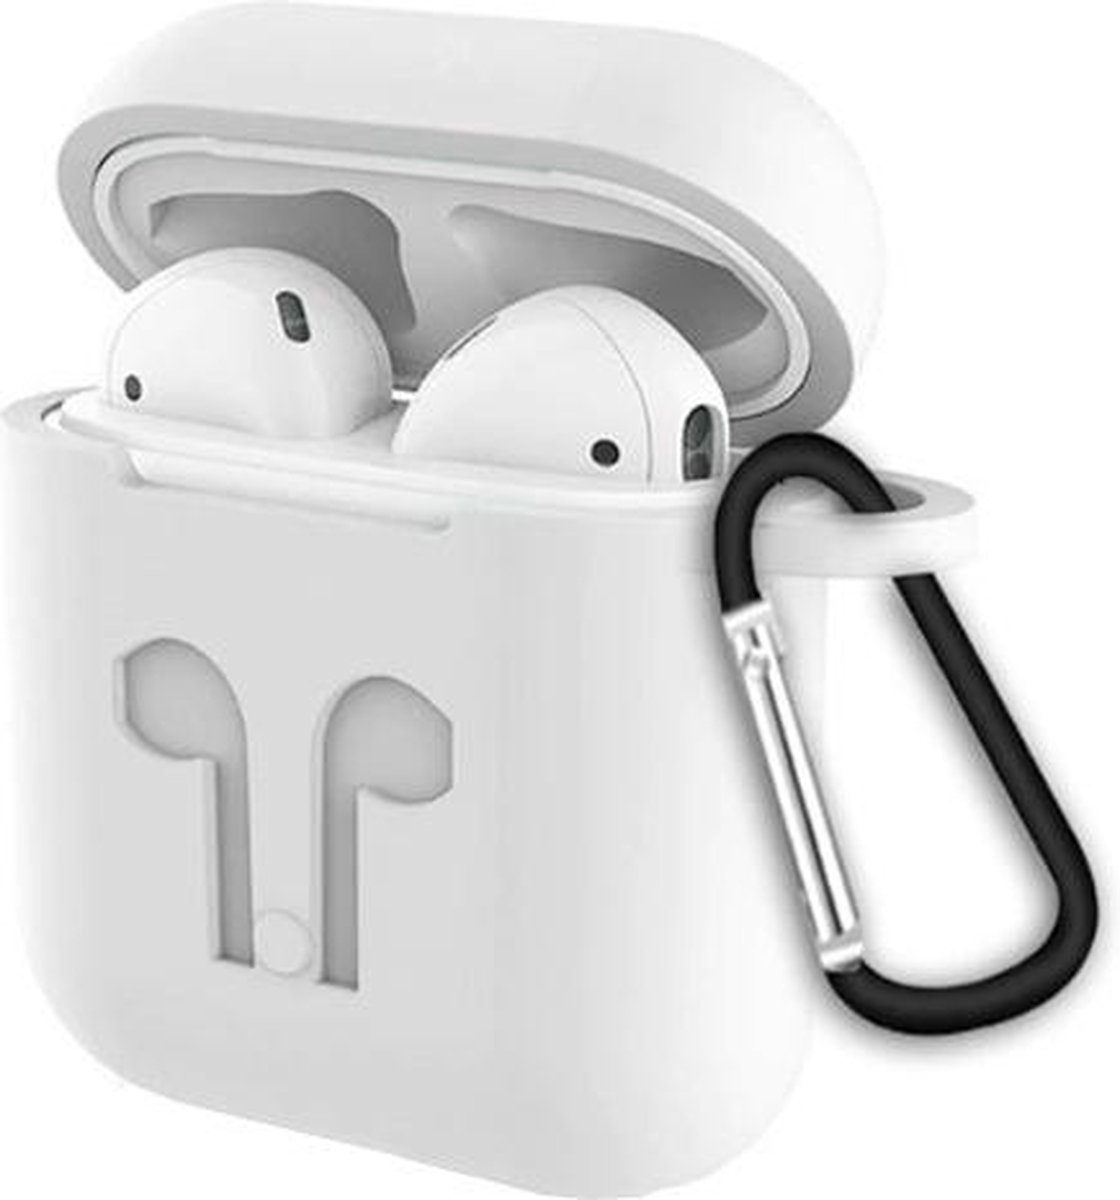 Siliconen hoesje voor Apple AirPods - 3 in 1 set! - Wit